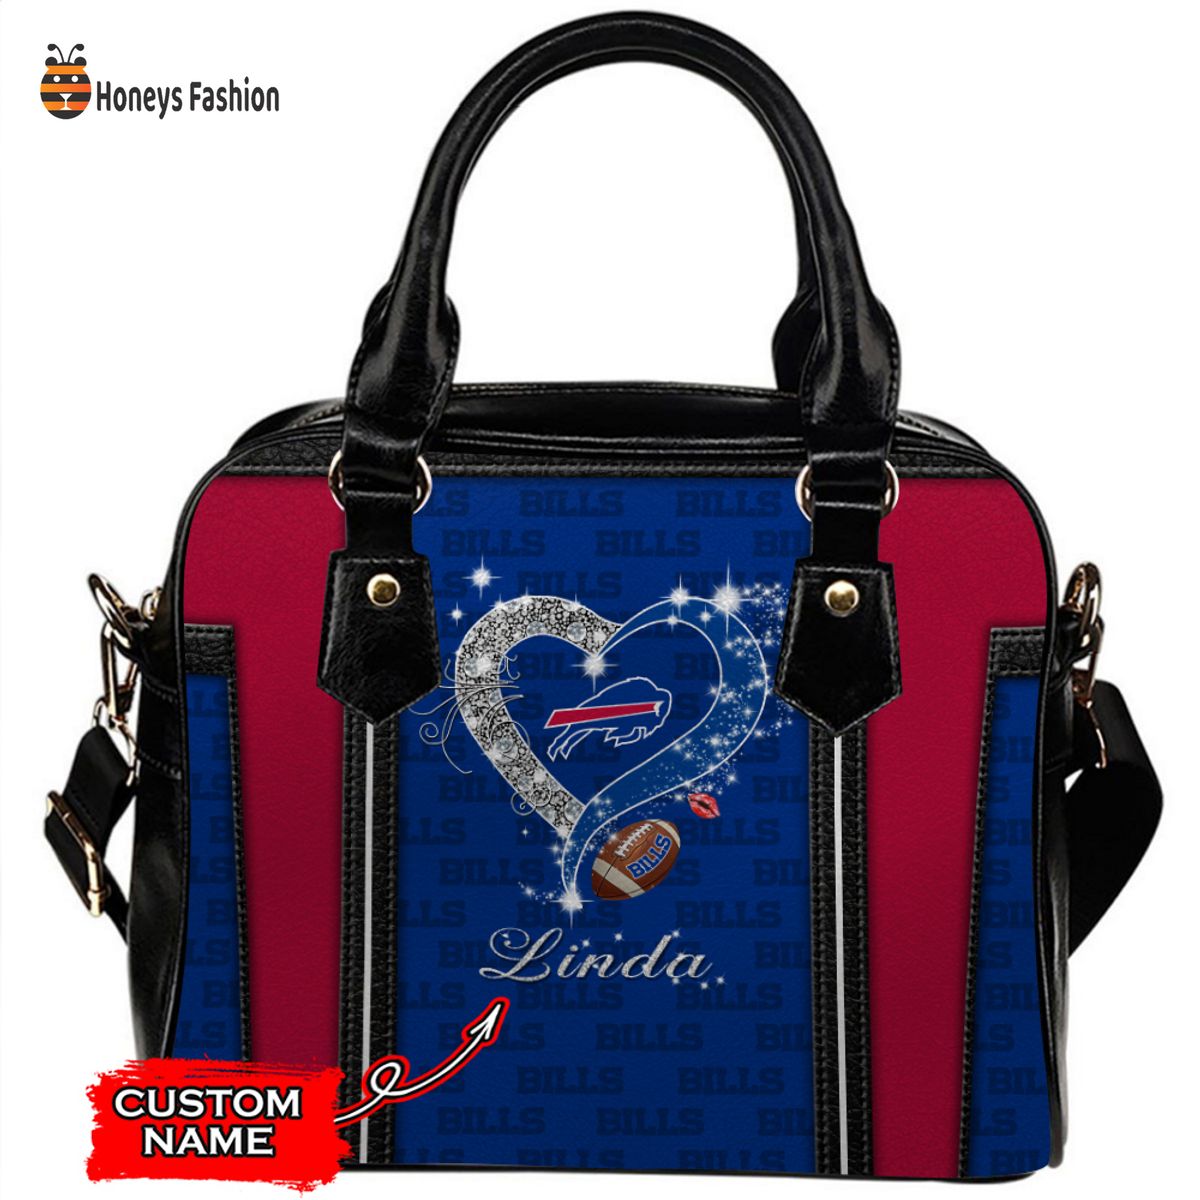 Buffalo Bills NFL Custom Name Leather Handbag Tote bag